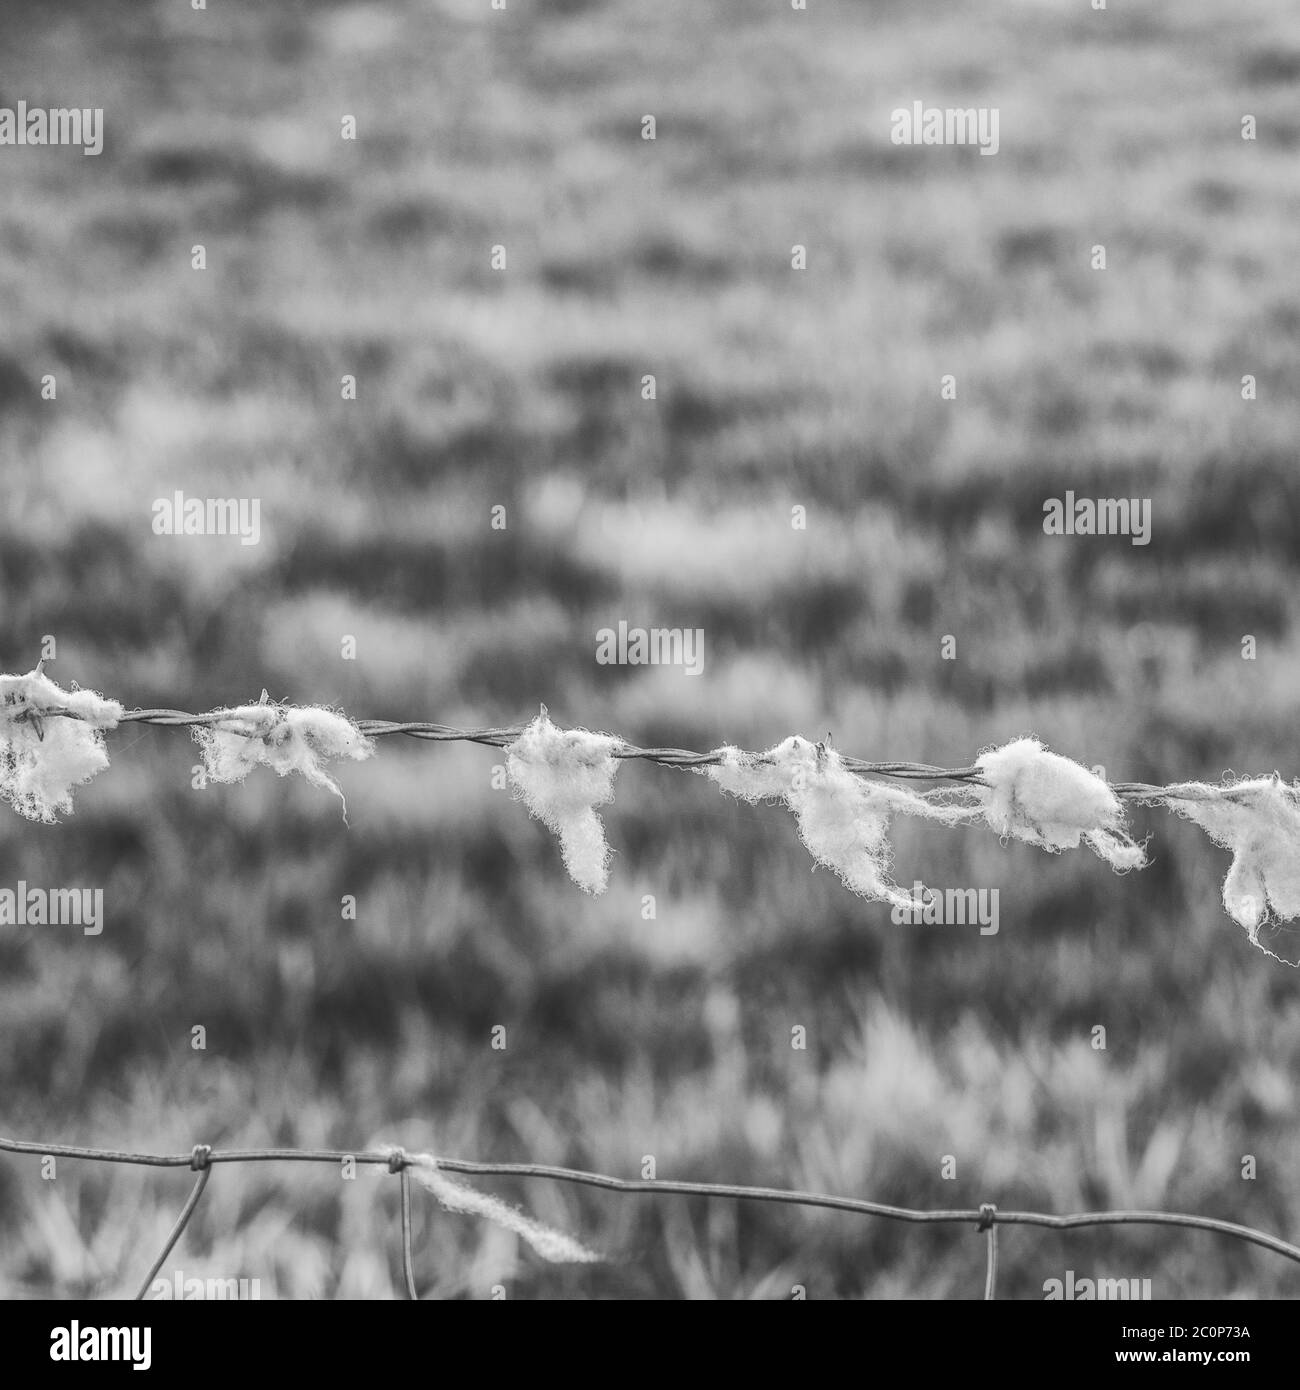 La laine de mouton attrapée par des clôtures en treillis barbelés dans le champ. Métaphore fugace et renié. Banque D'Images